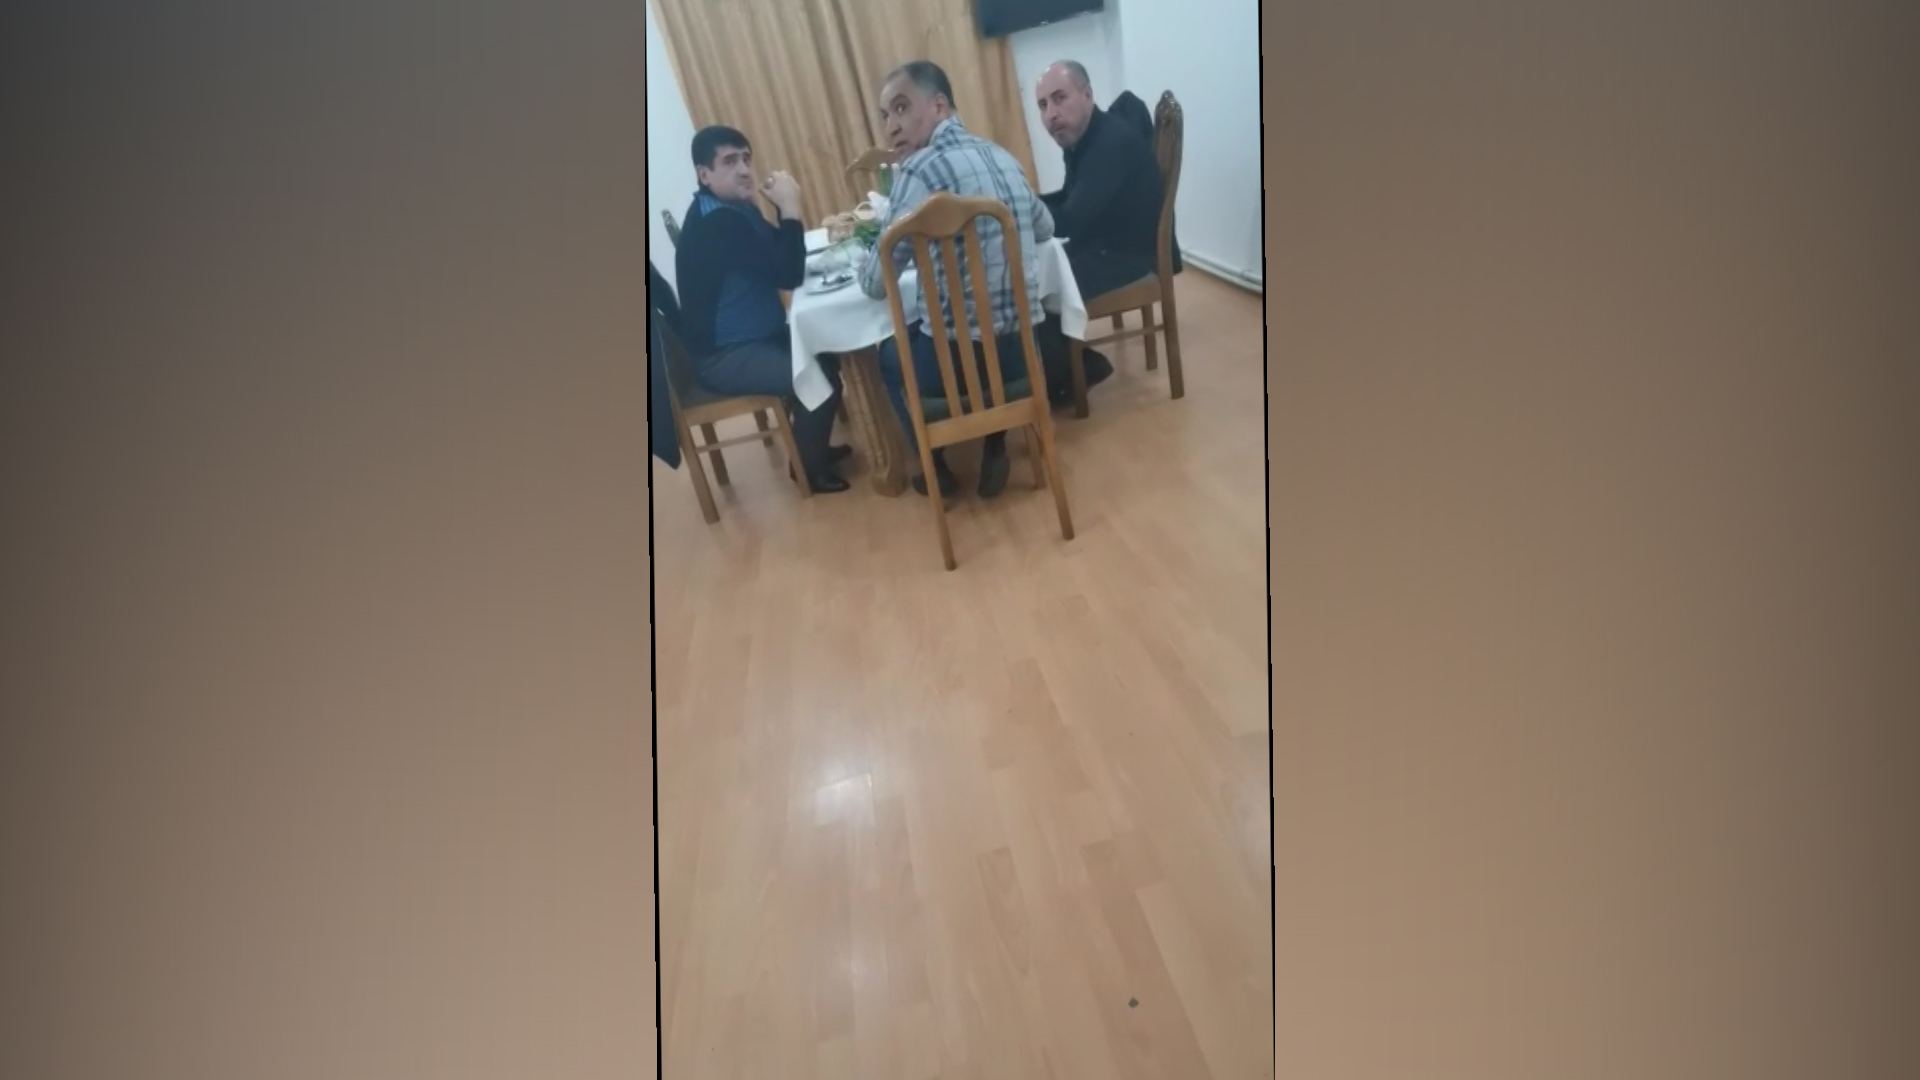 Biləcəridə gizli fəaliyyət göstərən restoran aşkarlandı (FOTO/VİDEO)